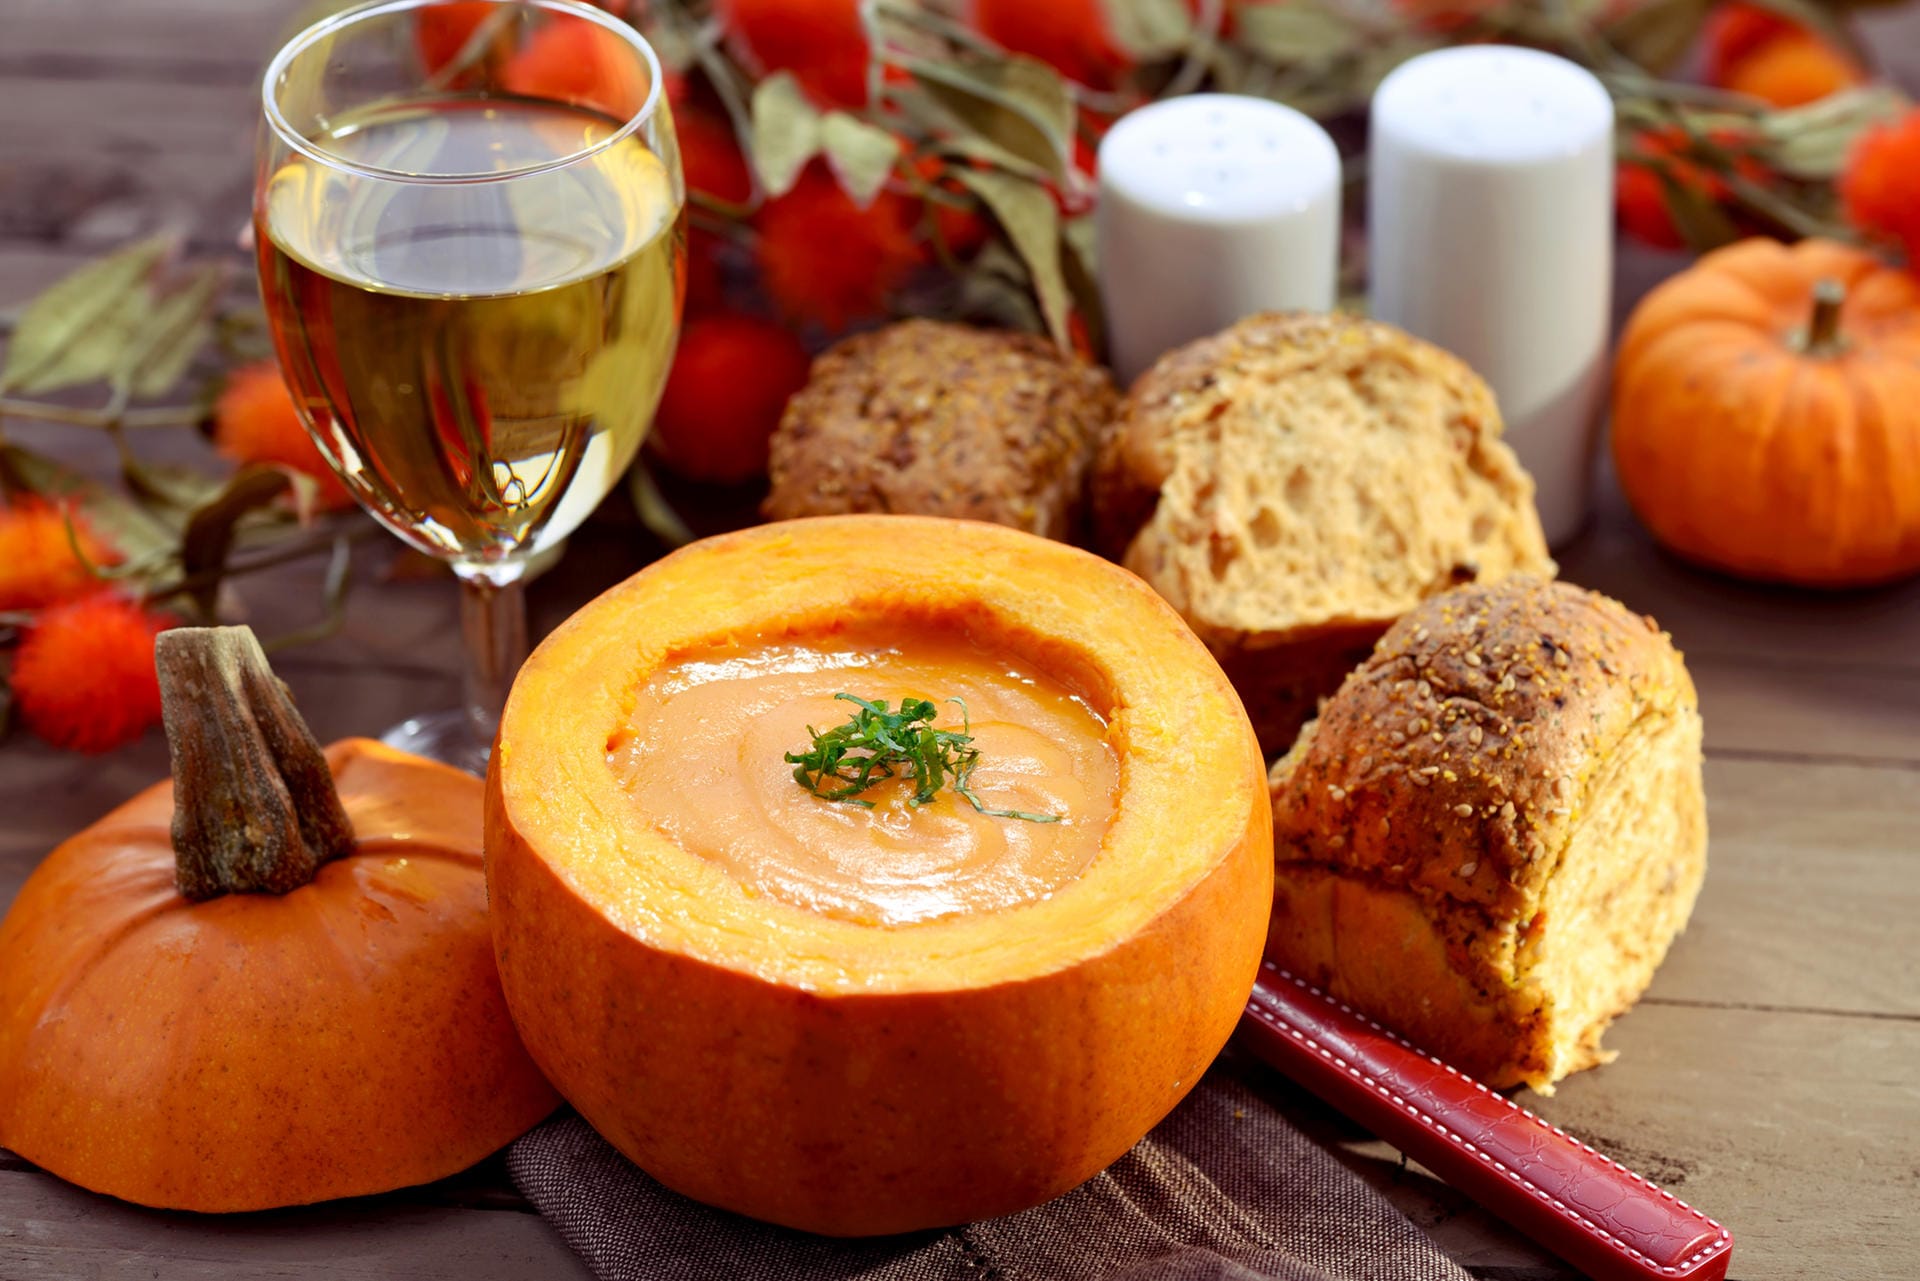 Kürbissuppe ist der Klassiker rund um Halloween. Ein optisches Highlight: Die Suppe direkt aus dem ausgehöhlten Kürbis verspeisen. Das Rezept für eine pikante Kürbissuppe finden Sie hier.